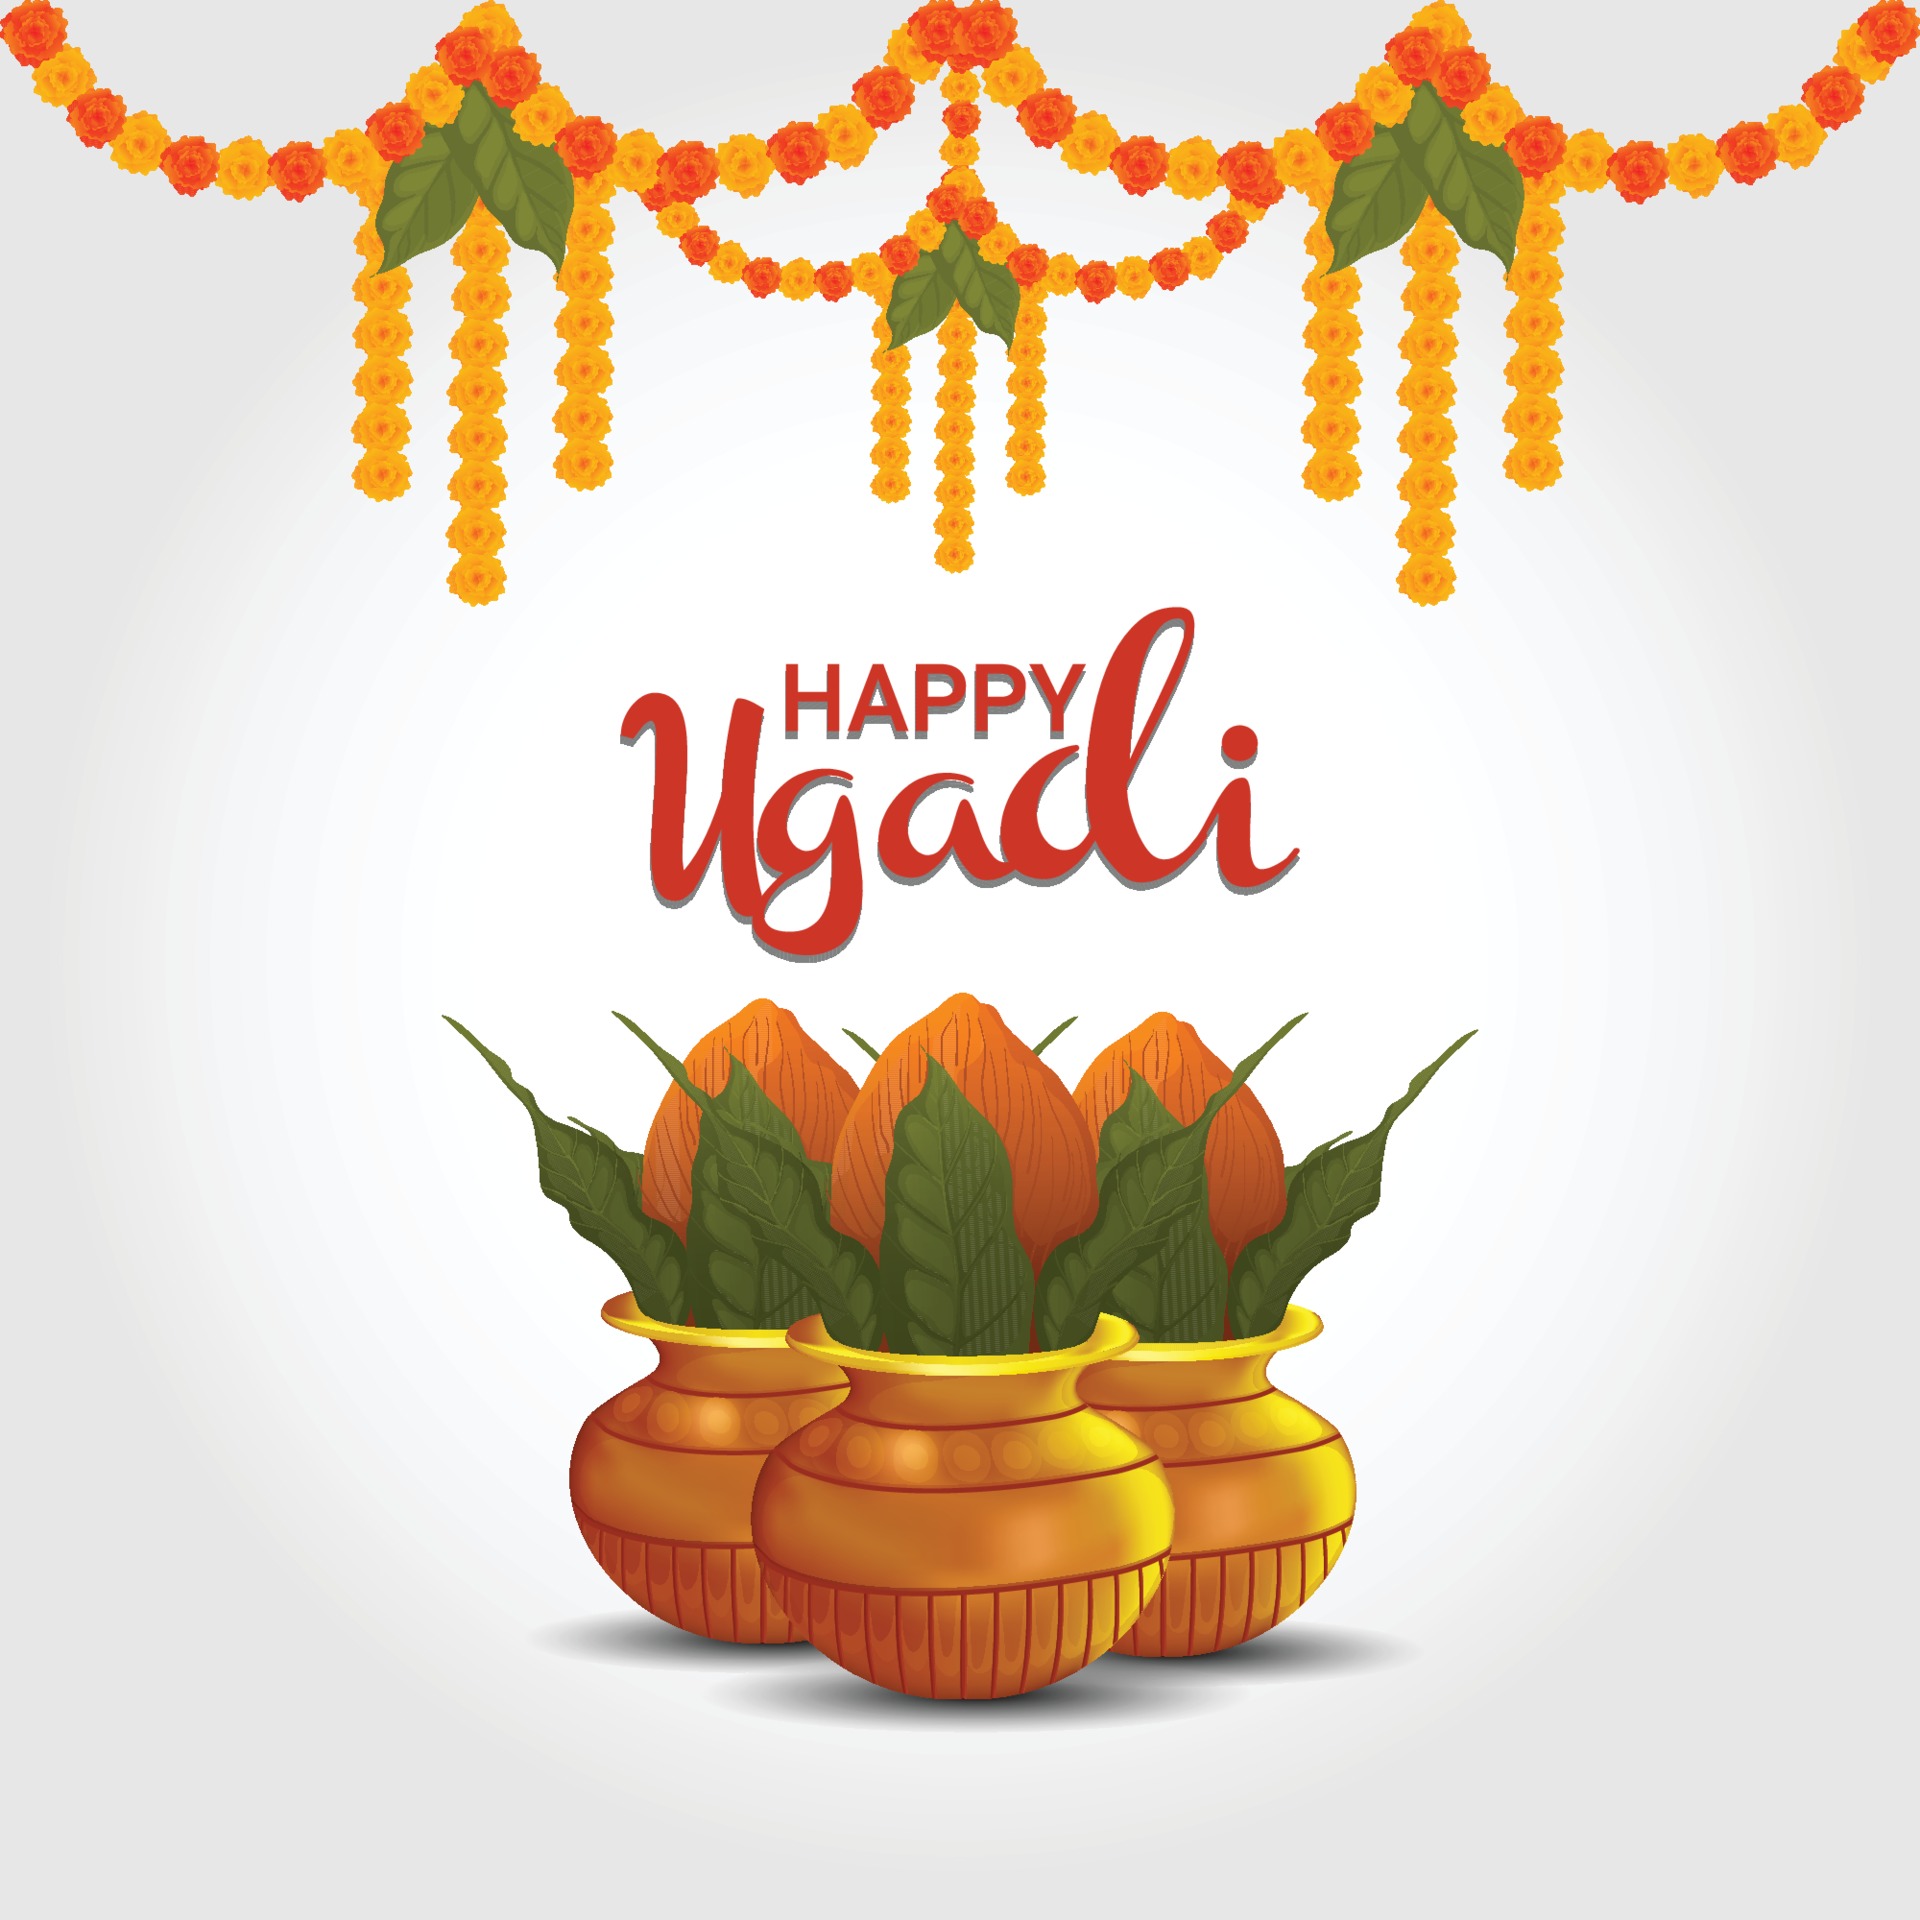 Hãy tới xem bức ảnh thiết kế thiệp chúc mừng Ngày Ugadi đầy tươi vui sắc màu để bắt đầu một năm mới đầy may mắn và thành công.